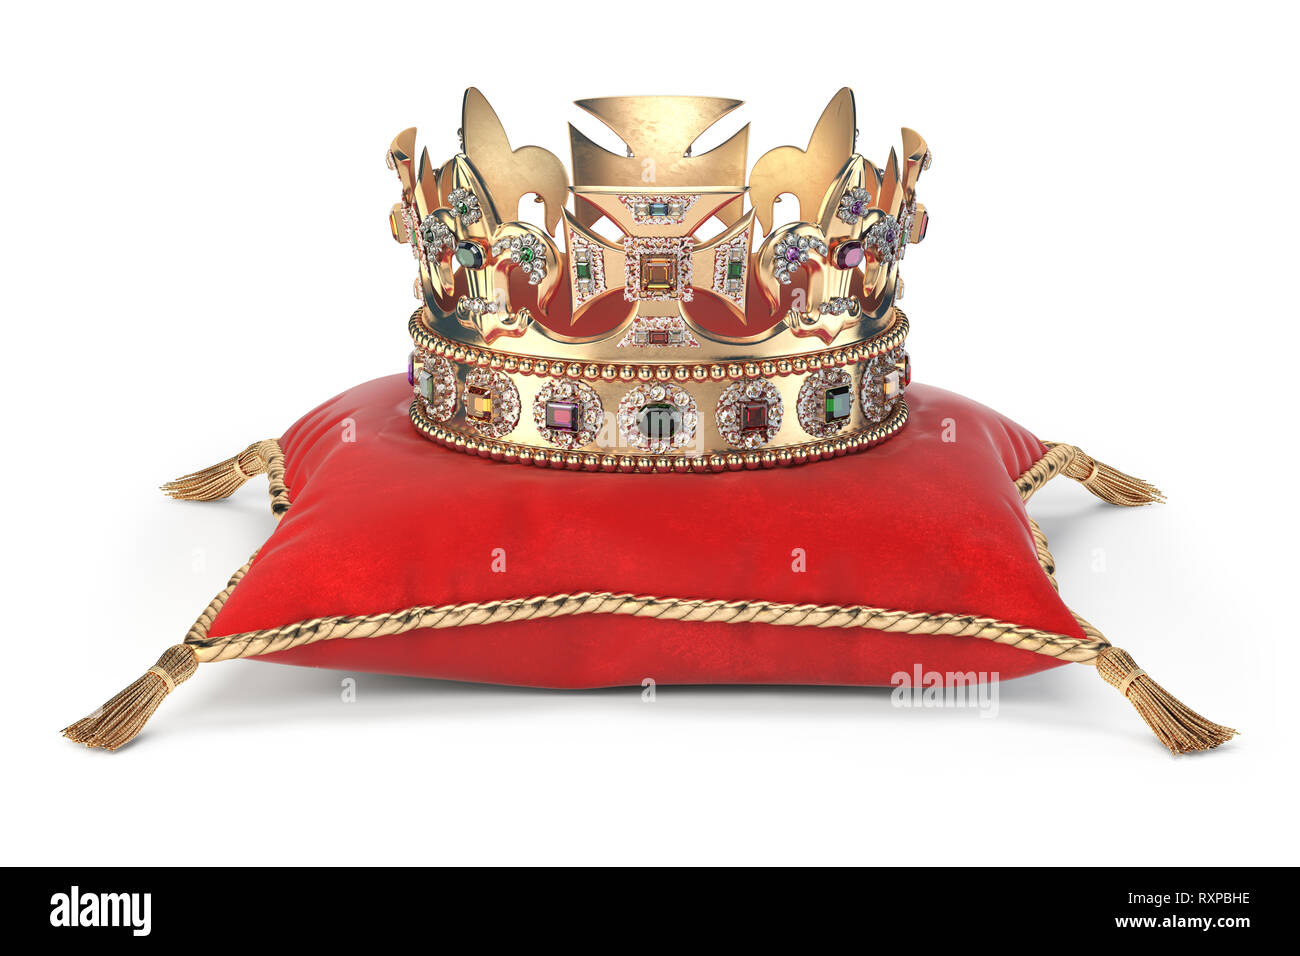 Goldene Krone mit Juwelen auf rotem Samt Kissen für Krönung isoliert auf Weiss. 3D-Darstellung Stockfoto